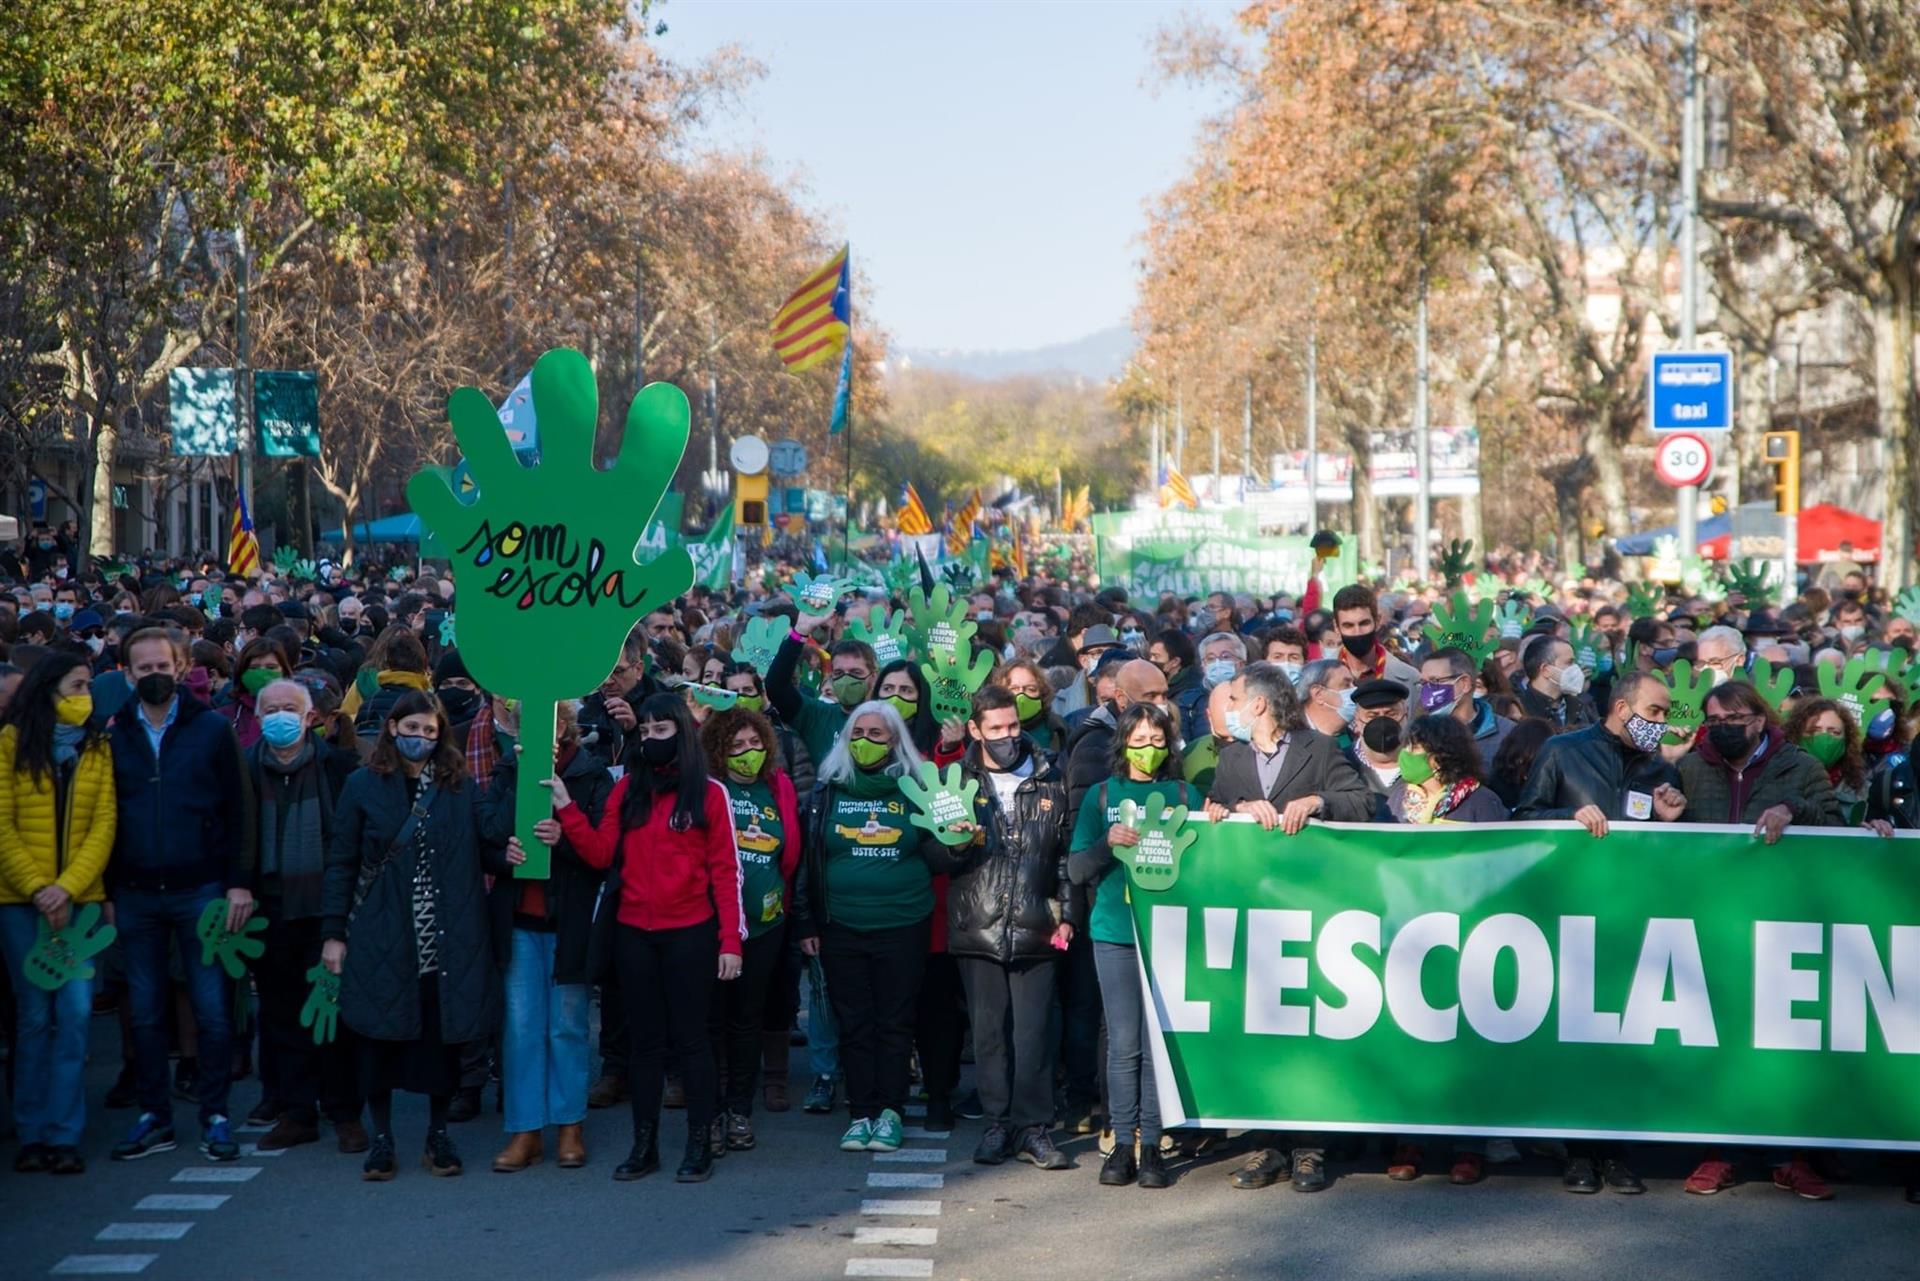 Miles de catalanes salen a la calle en defensa de la inmersión lingüística